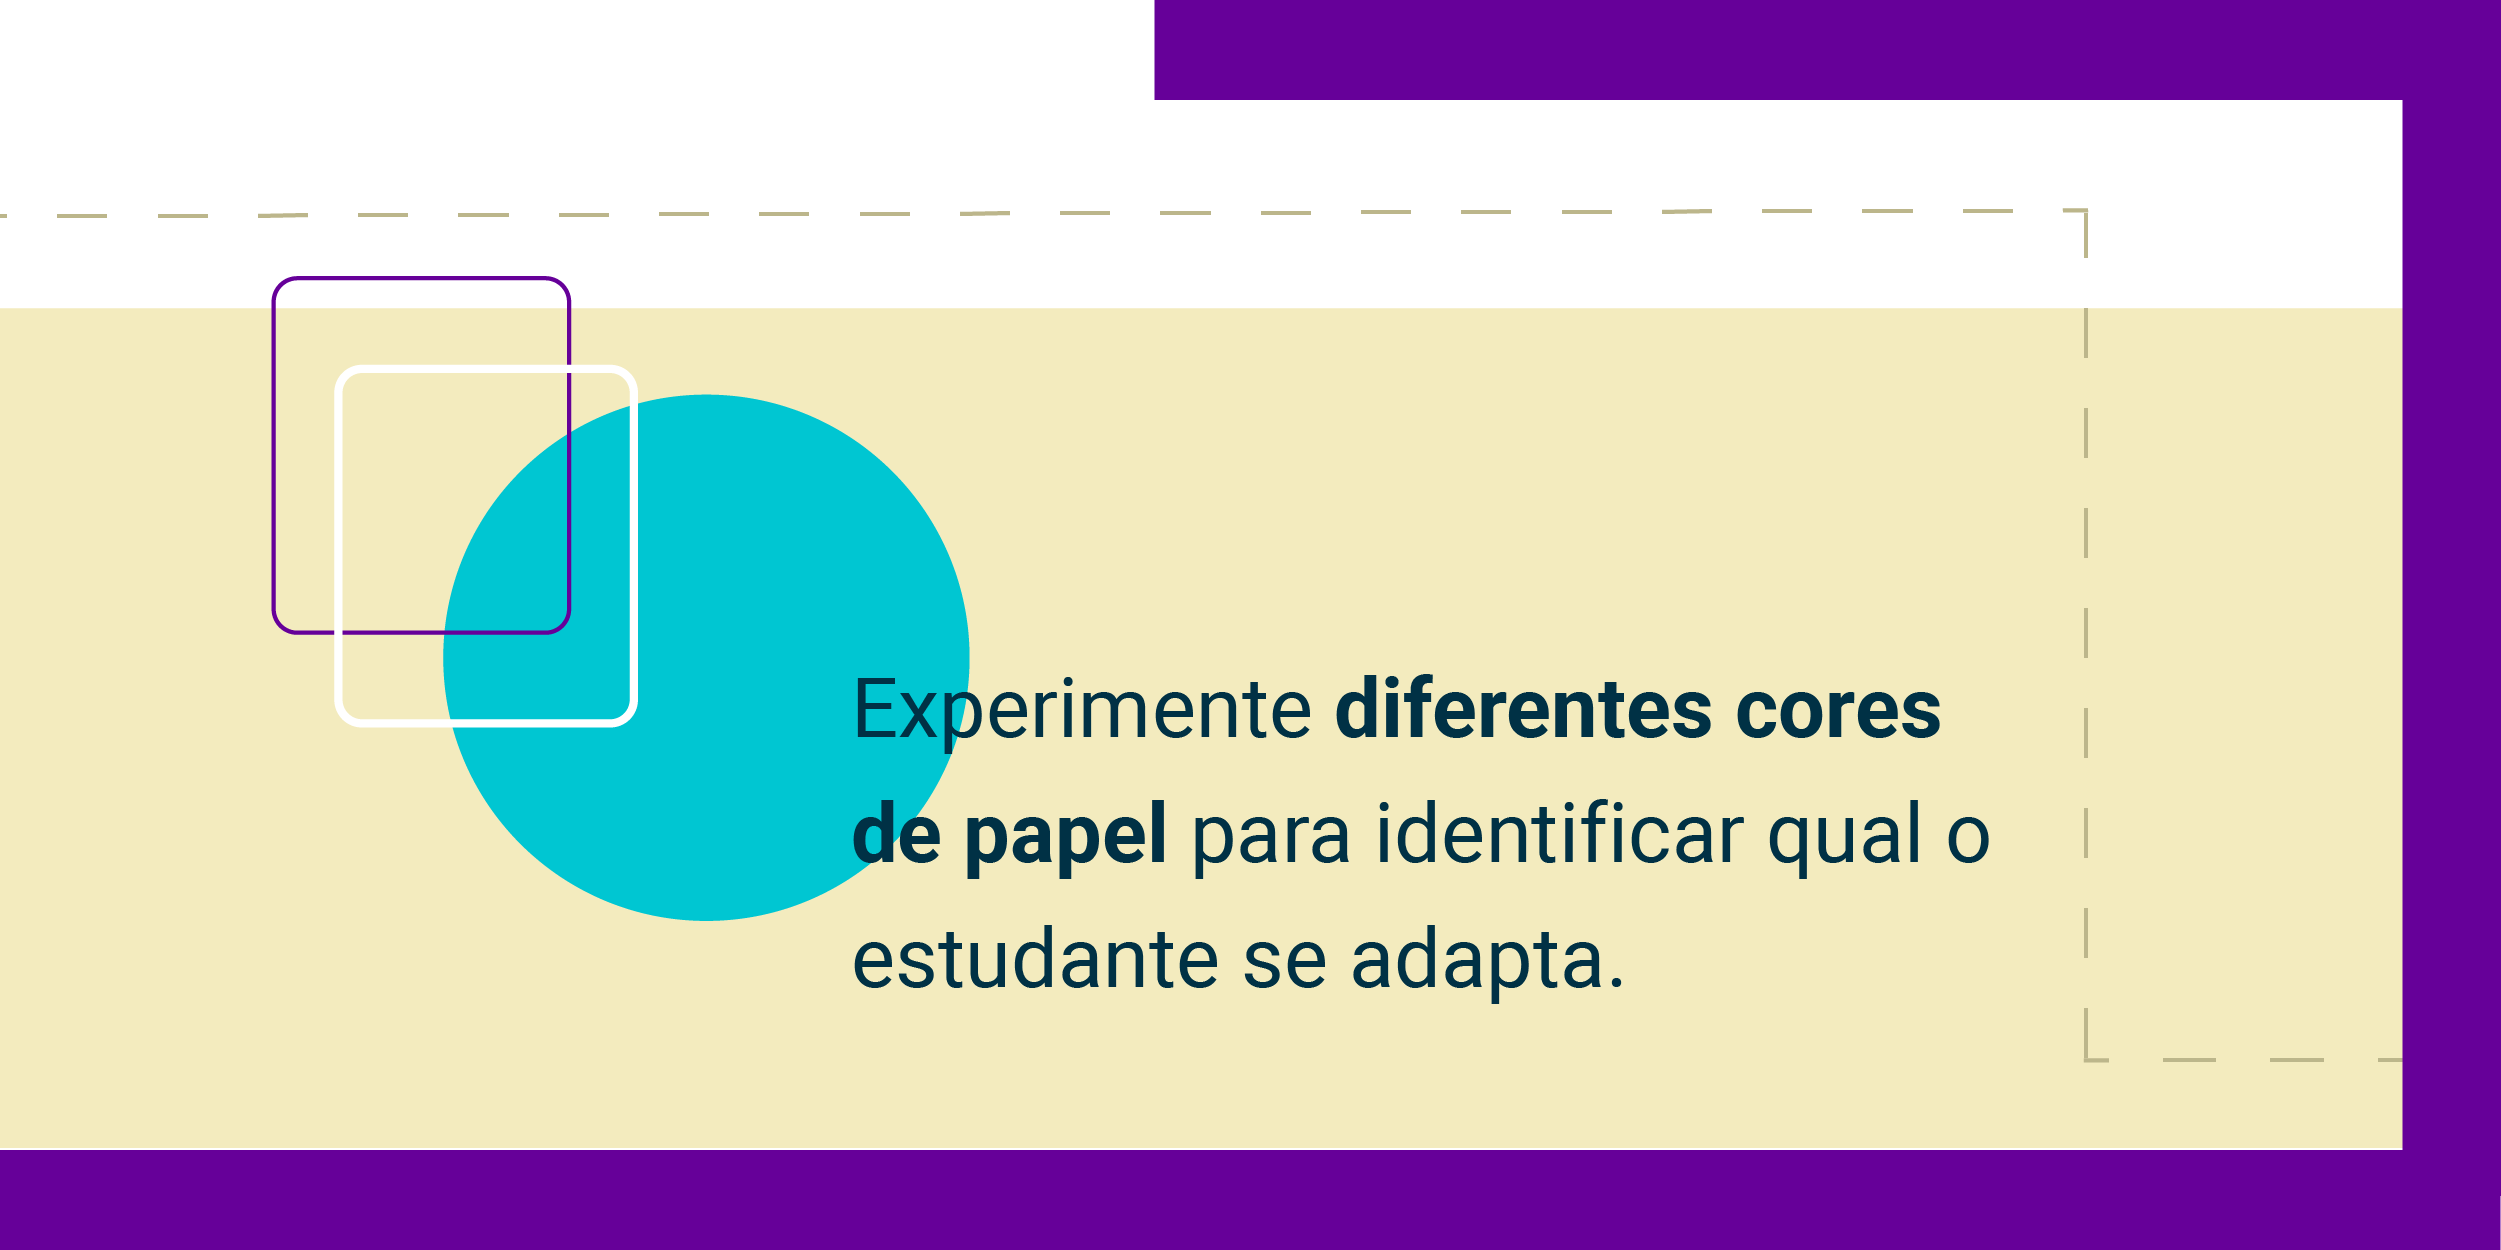 Imagem com a frase Experimente diferentes cores de papel para identificar qual o estudante se adapta.